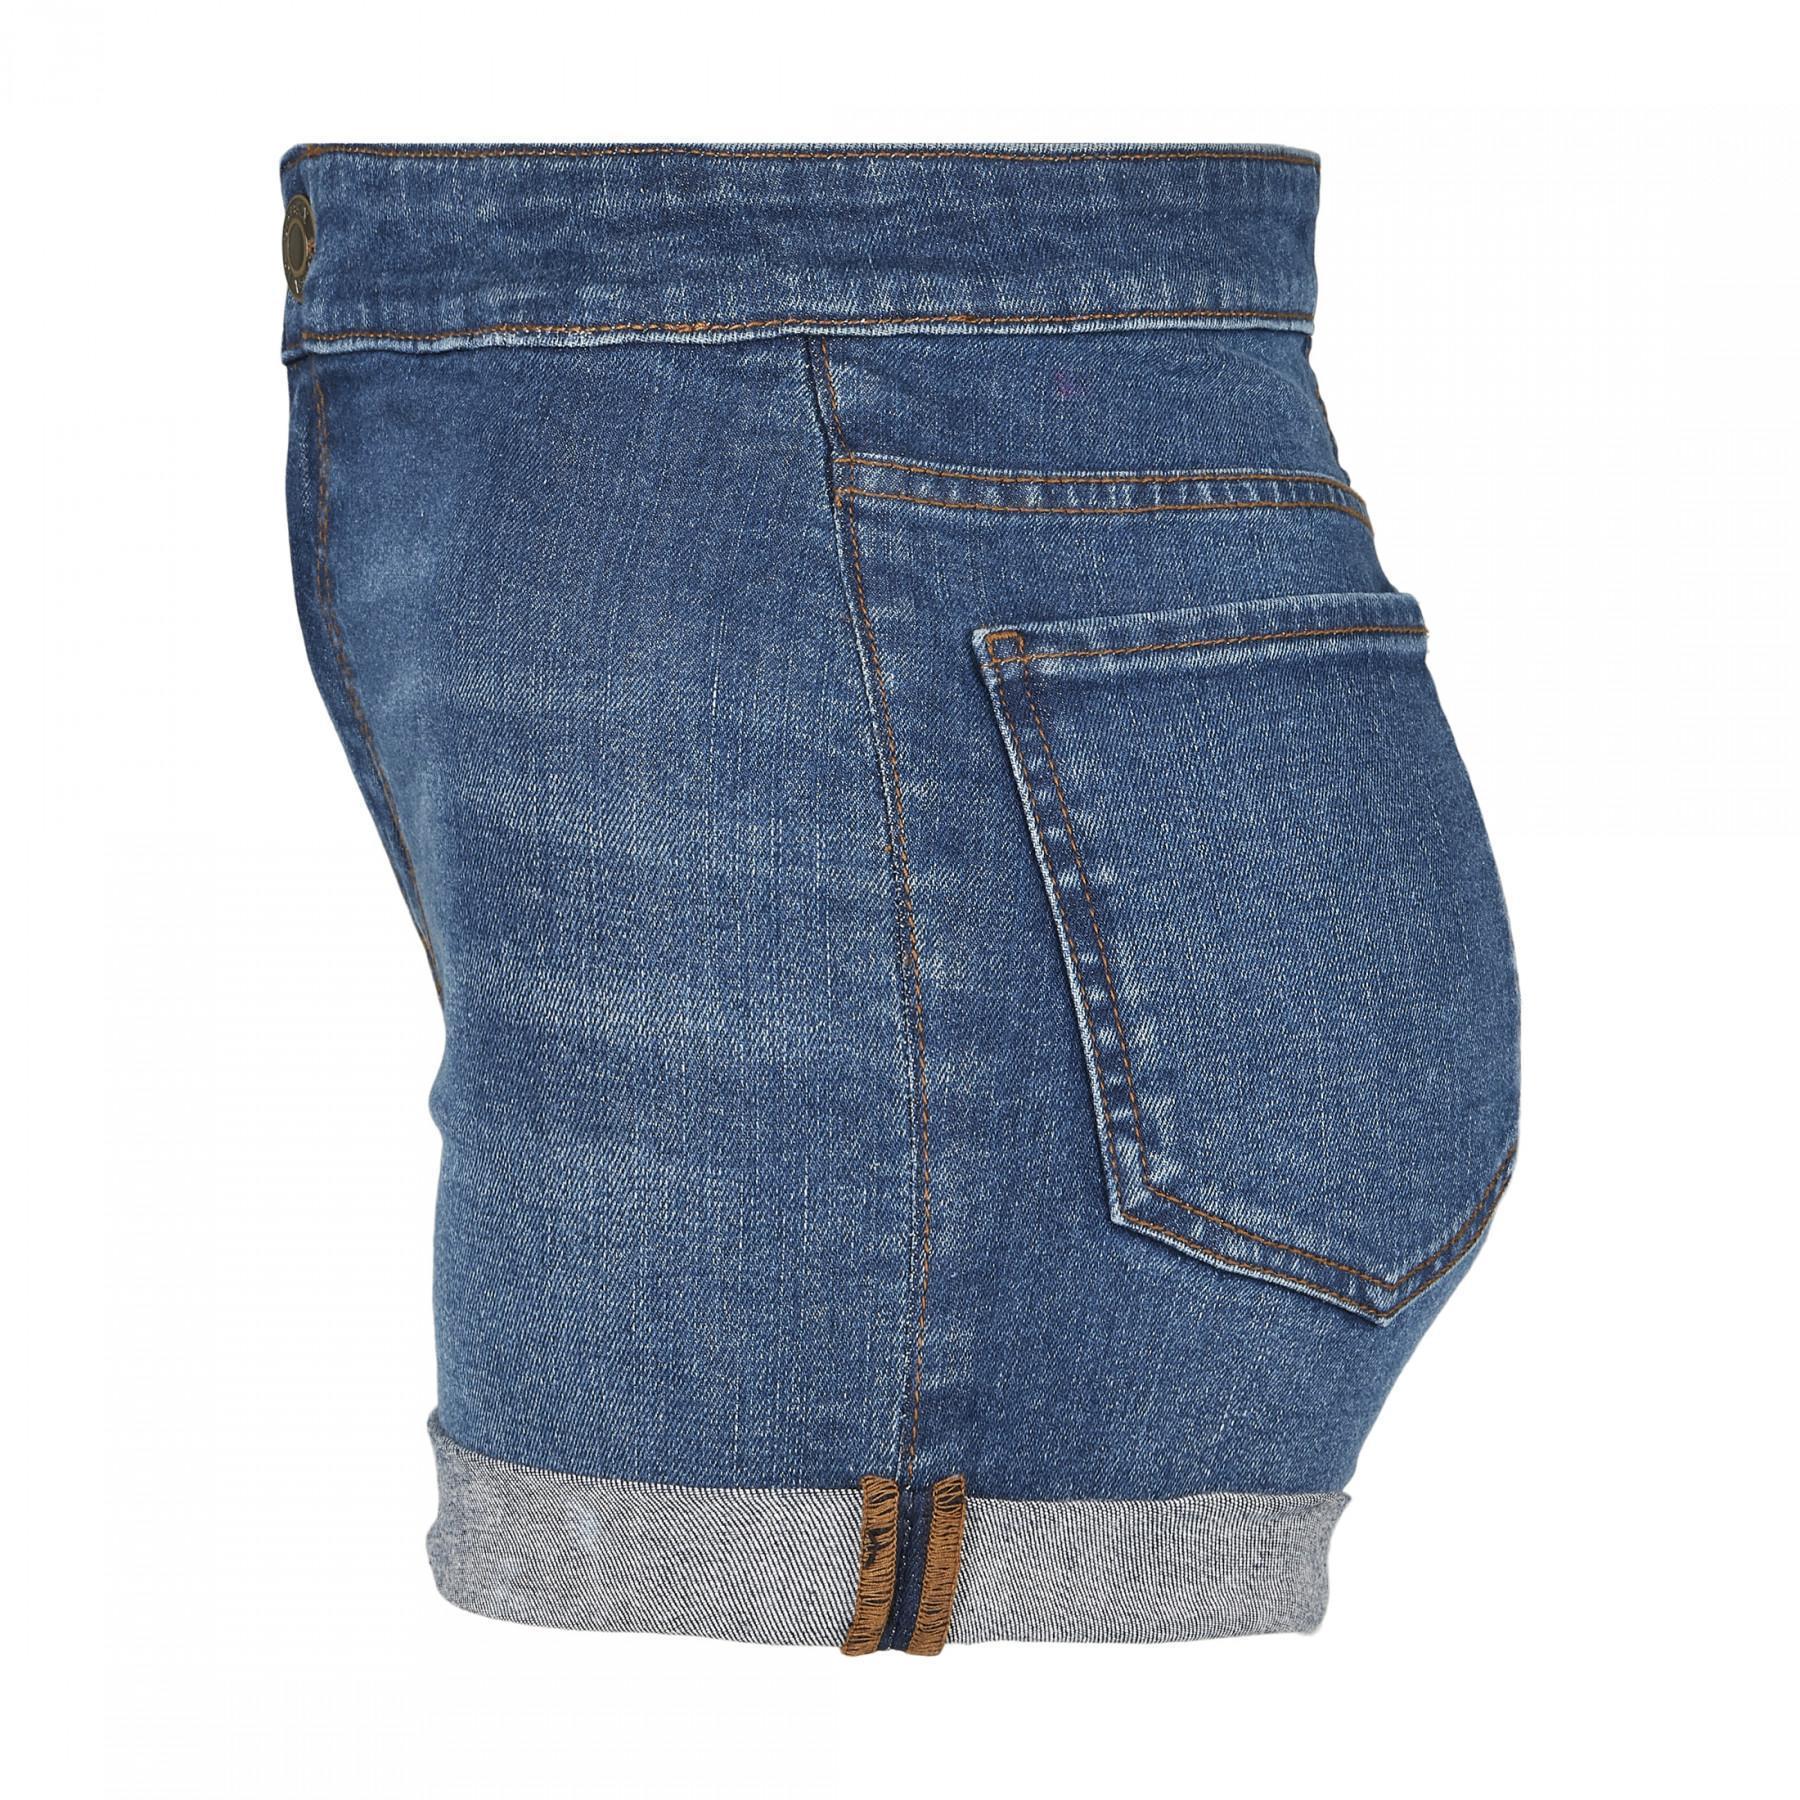 Dames Urban Klassieke zakjes slanke shorts